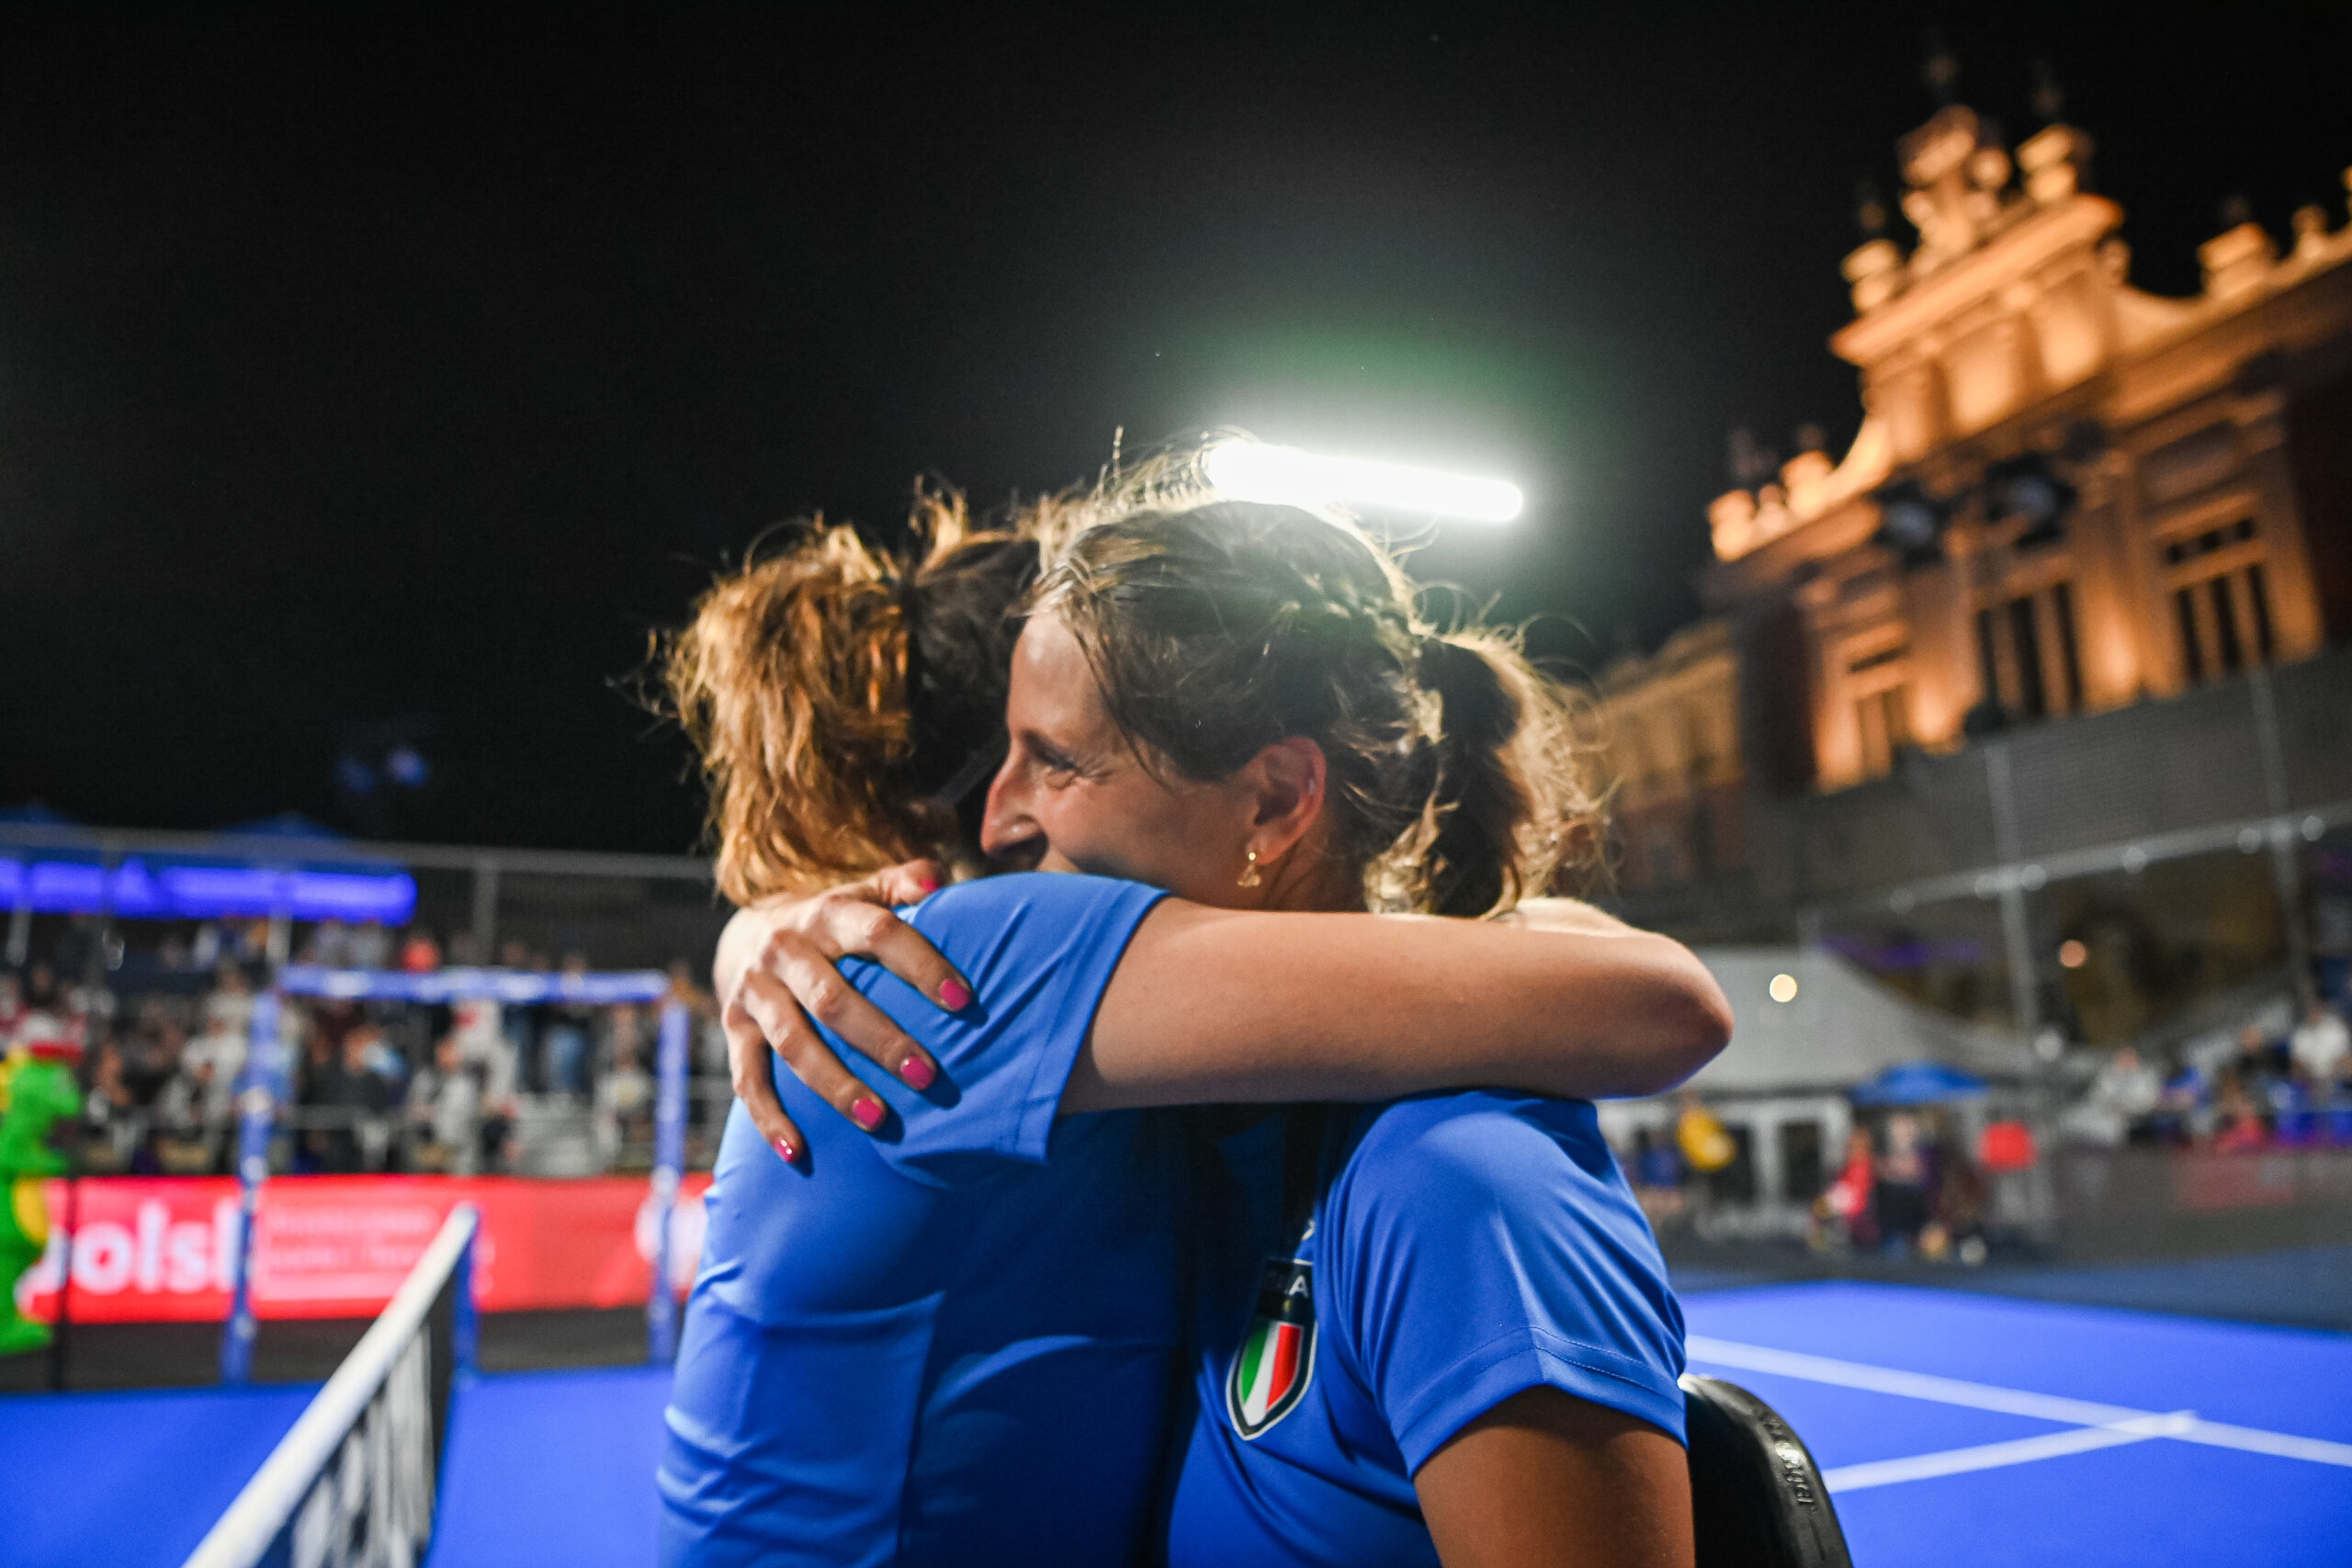 Jeux Européens – L’Italie obtient l’or avec Carolina Orsi / Giorgia Marchetti après 3h de match !